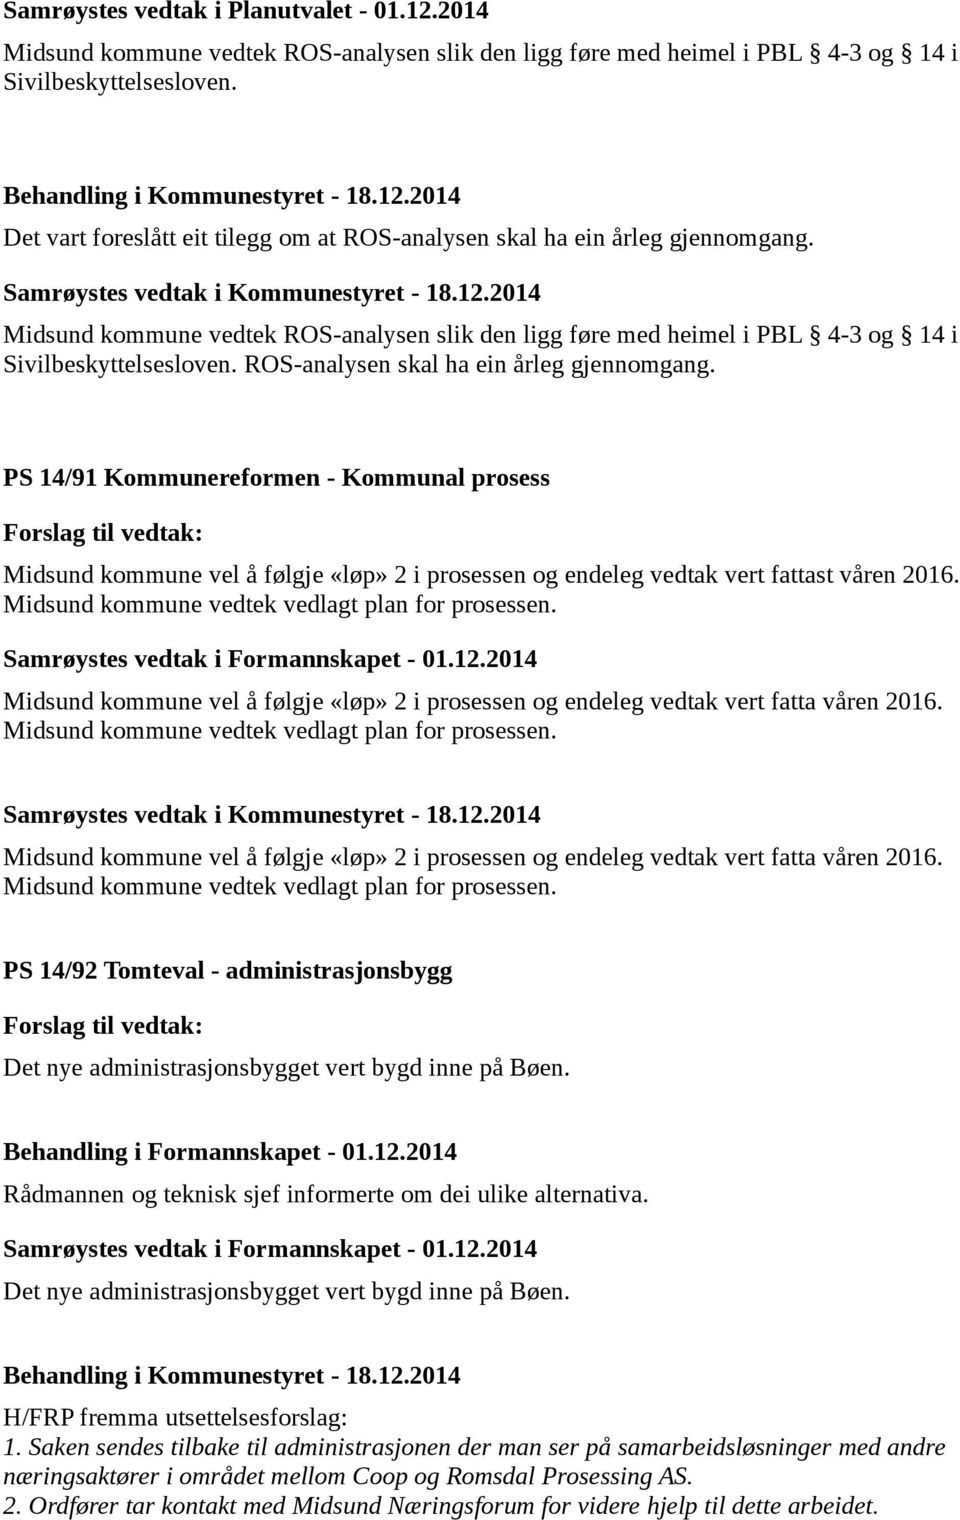 PS 14/91 Kommunereformen - Kommunal prosess Midsund kommune vel å følgje «løp» 2 i prosessen og endeleg vedtak vert fattast våren 2016. Midsund kommune vedtek vedlagt plan for prosessen.